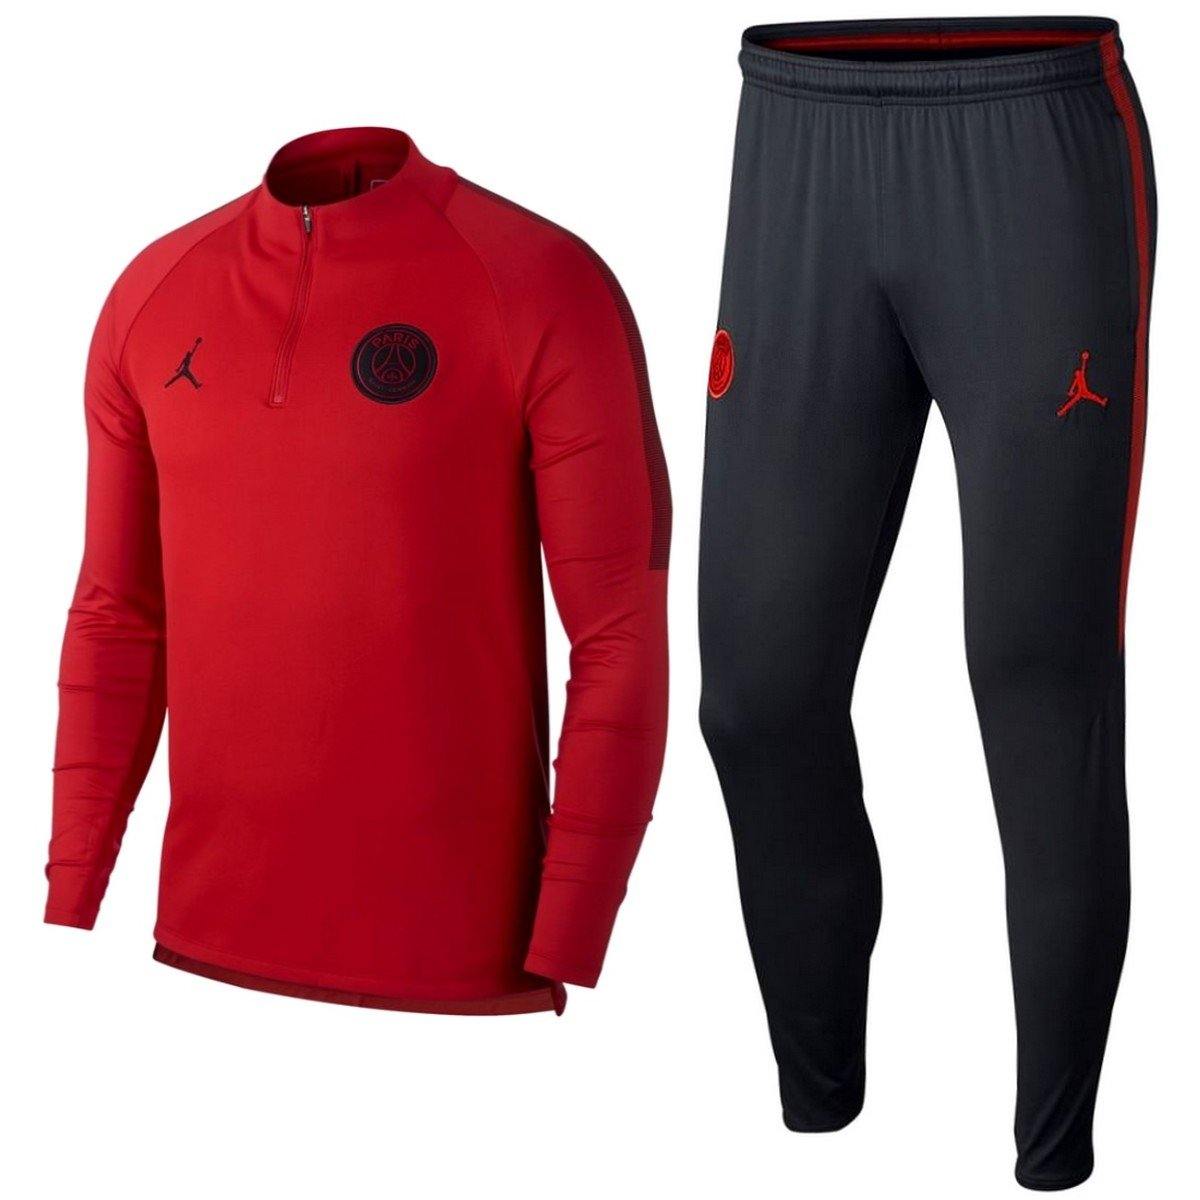 Jordan x PSG red/black technical soccer 